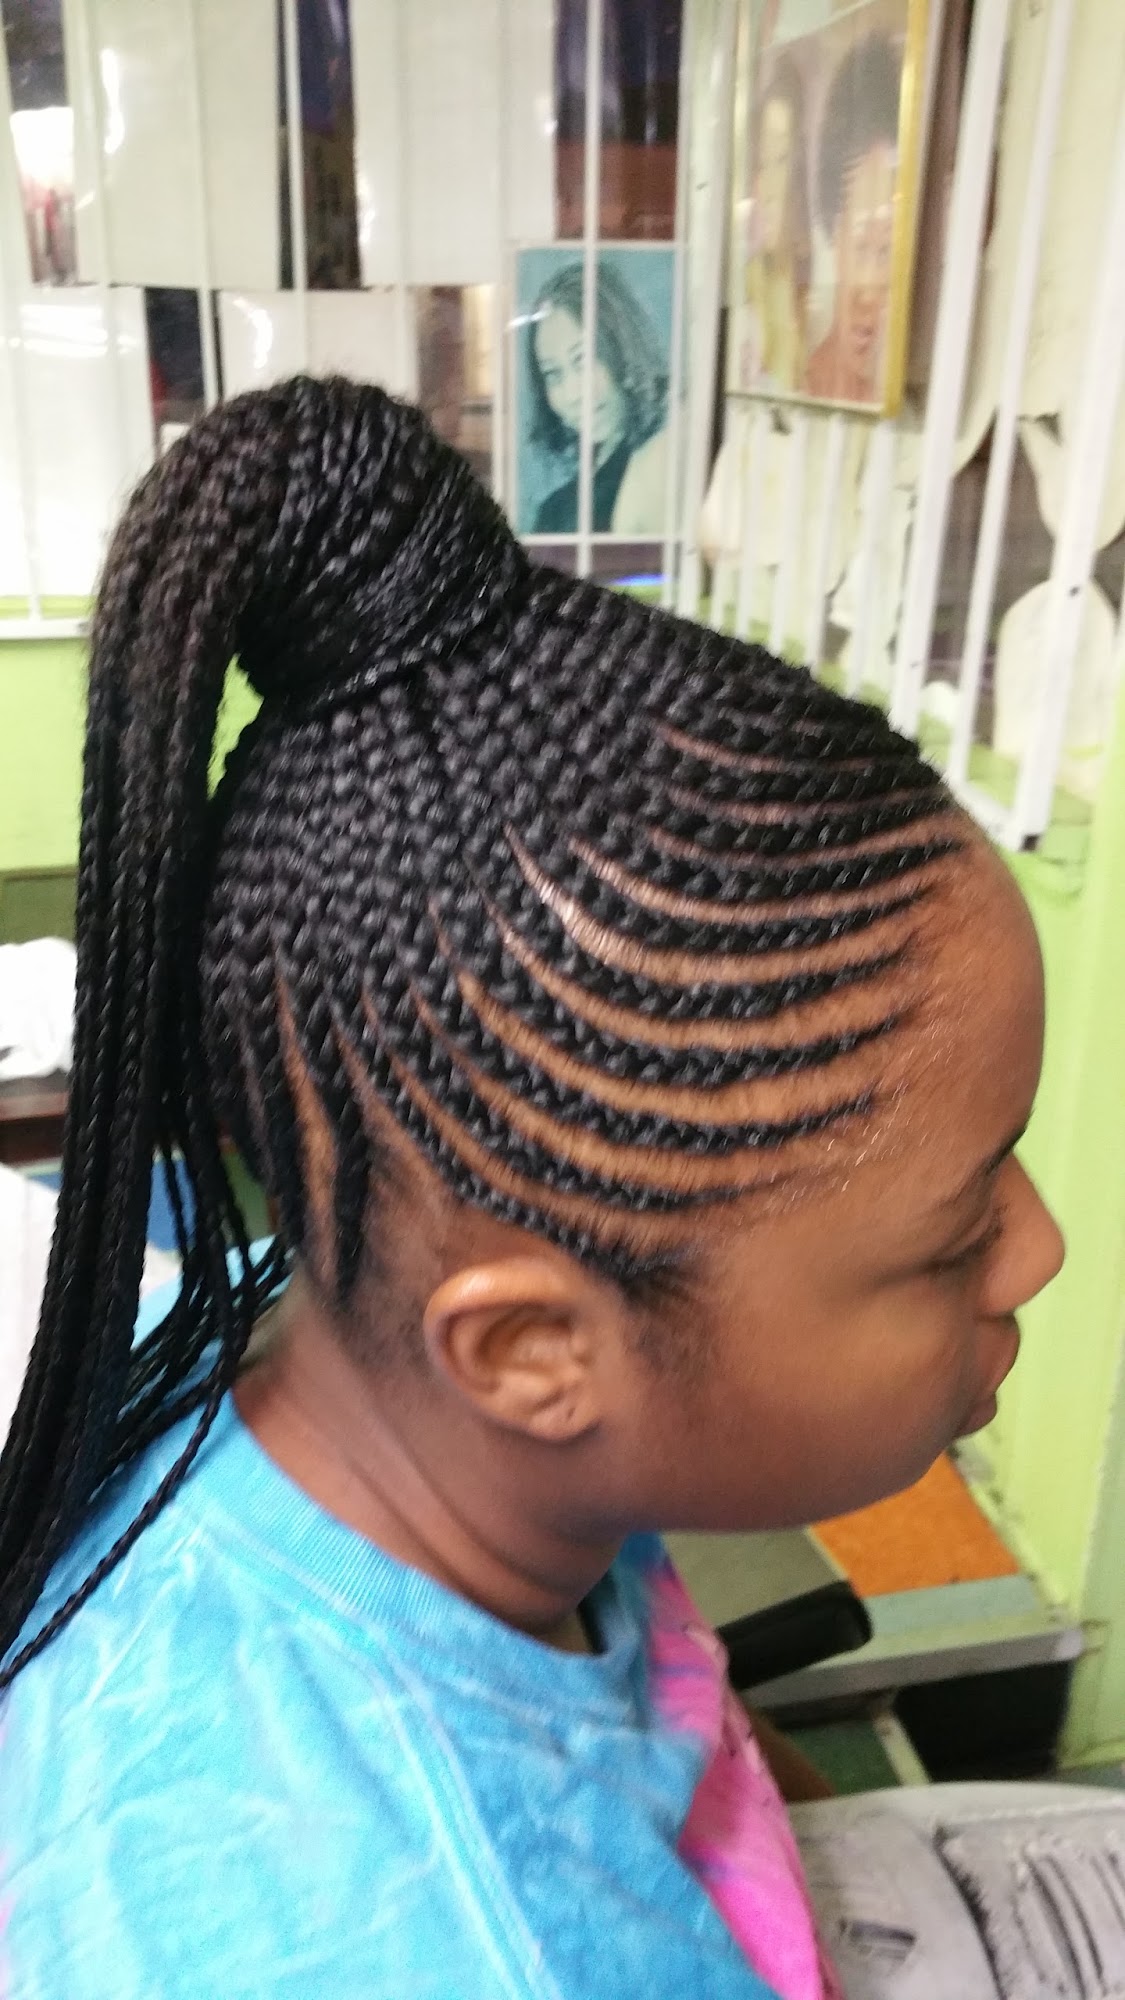 Express African Hair Braiding 6895 AL-75, Pinson Alabama 35126